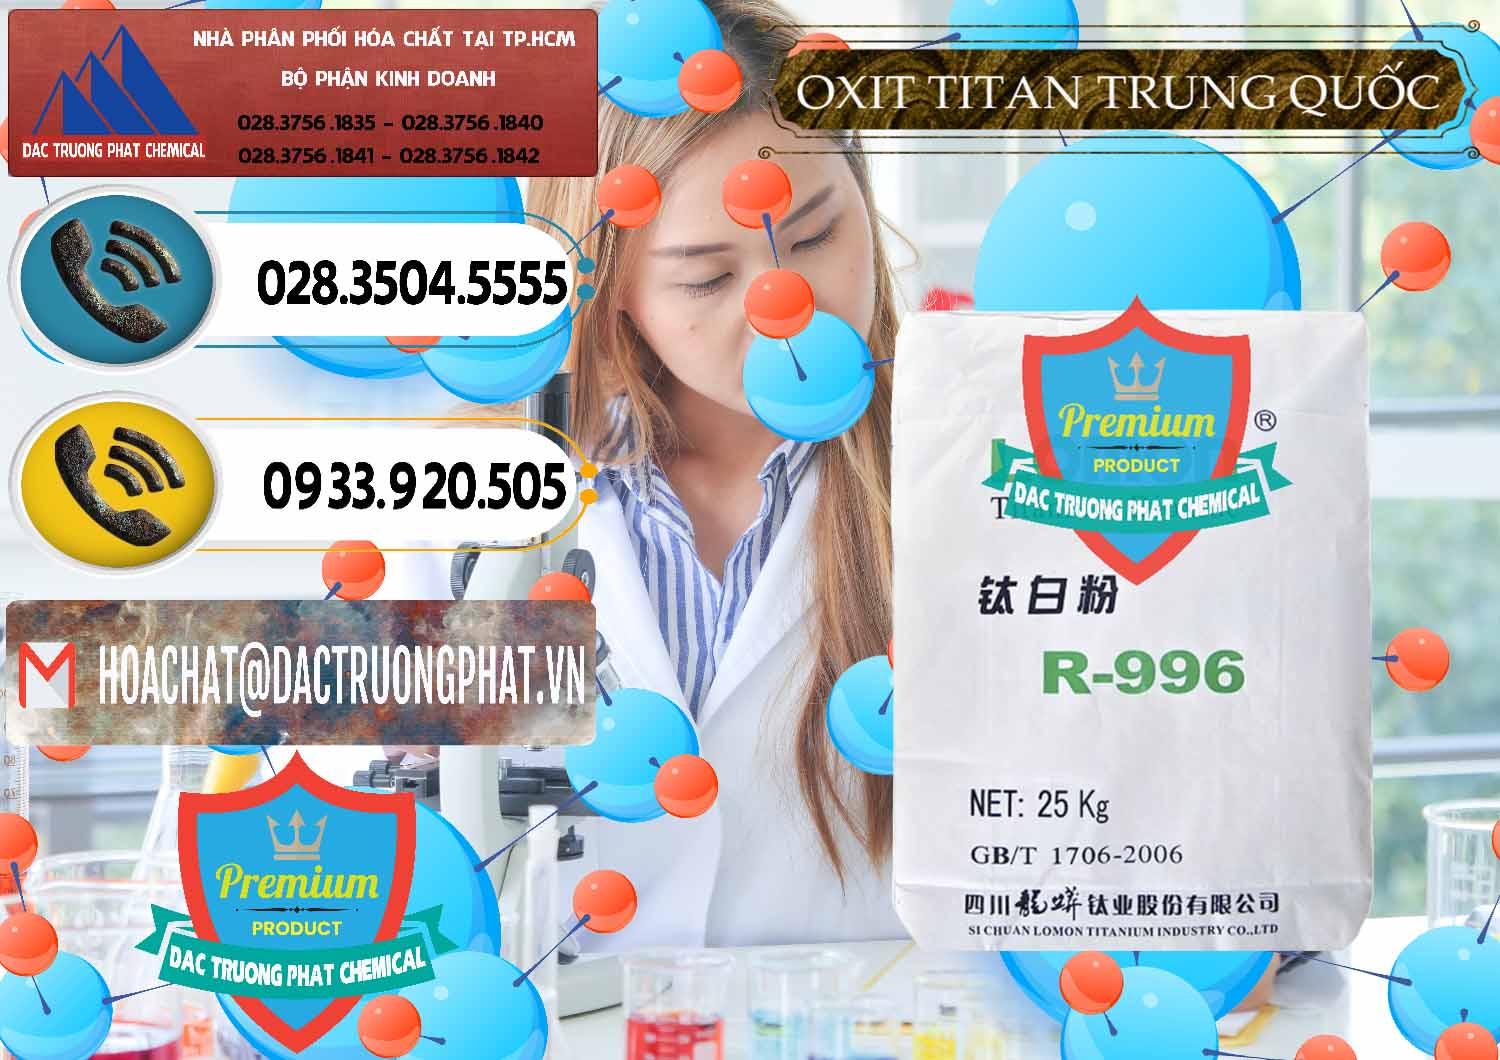 Nơi bán & cung cấp Oxit Titan KA100 – Tio2 Trung Quốc China - 0398 - Nơi phân phối & bán hóa chất tại TP.HCM - hoachatdetnhuom.vn